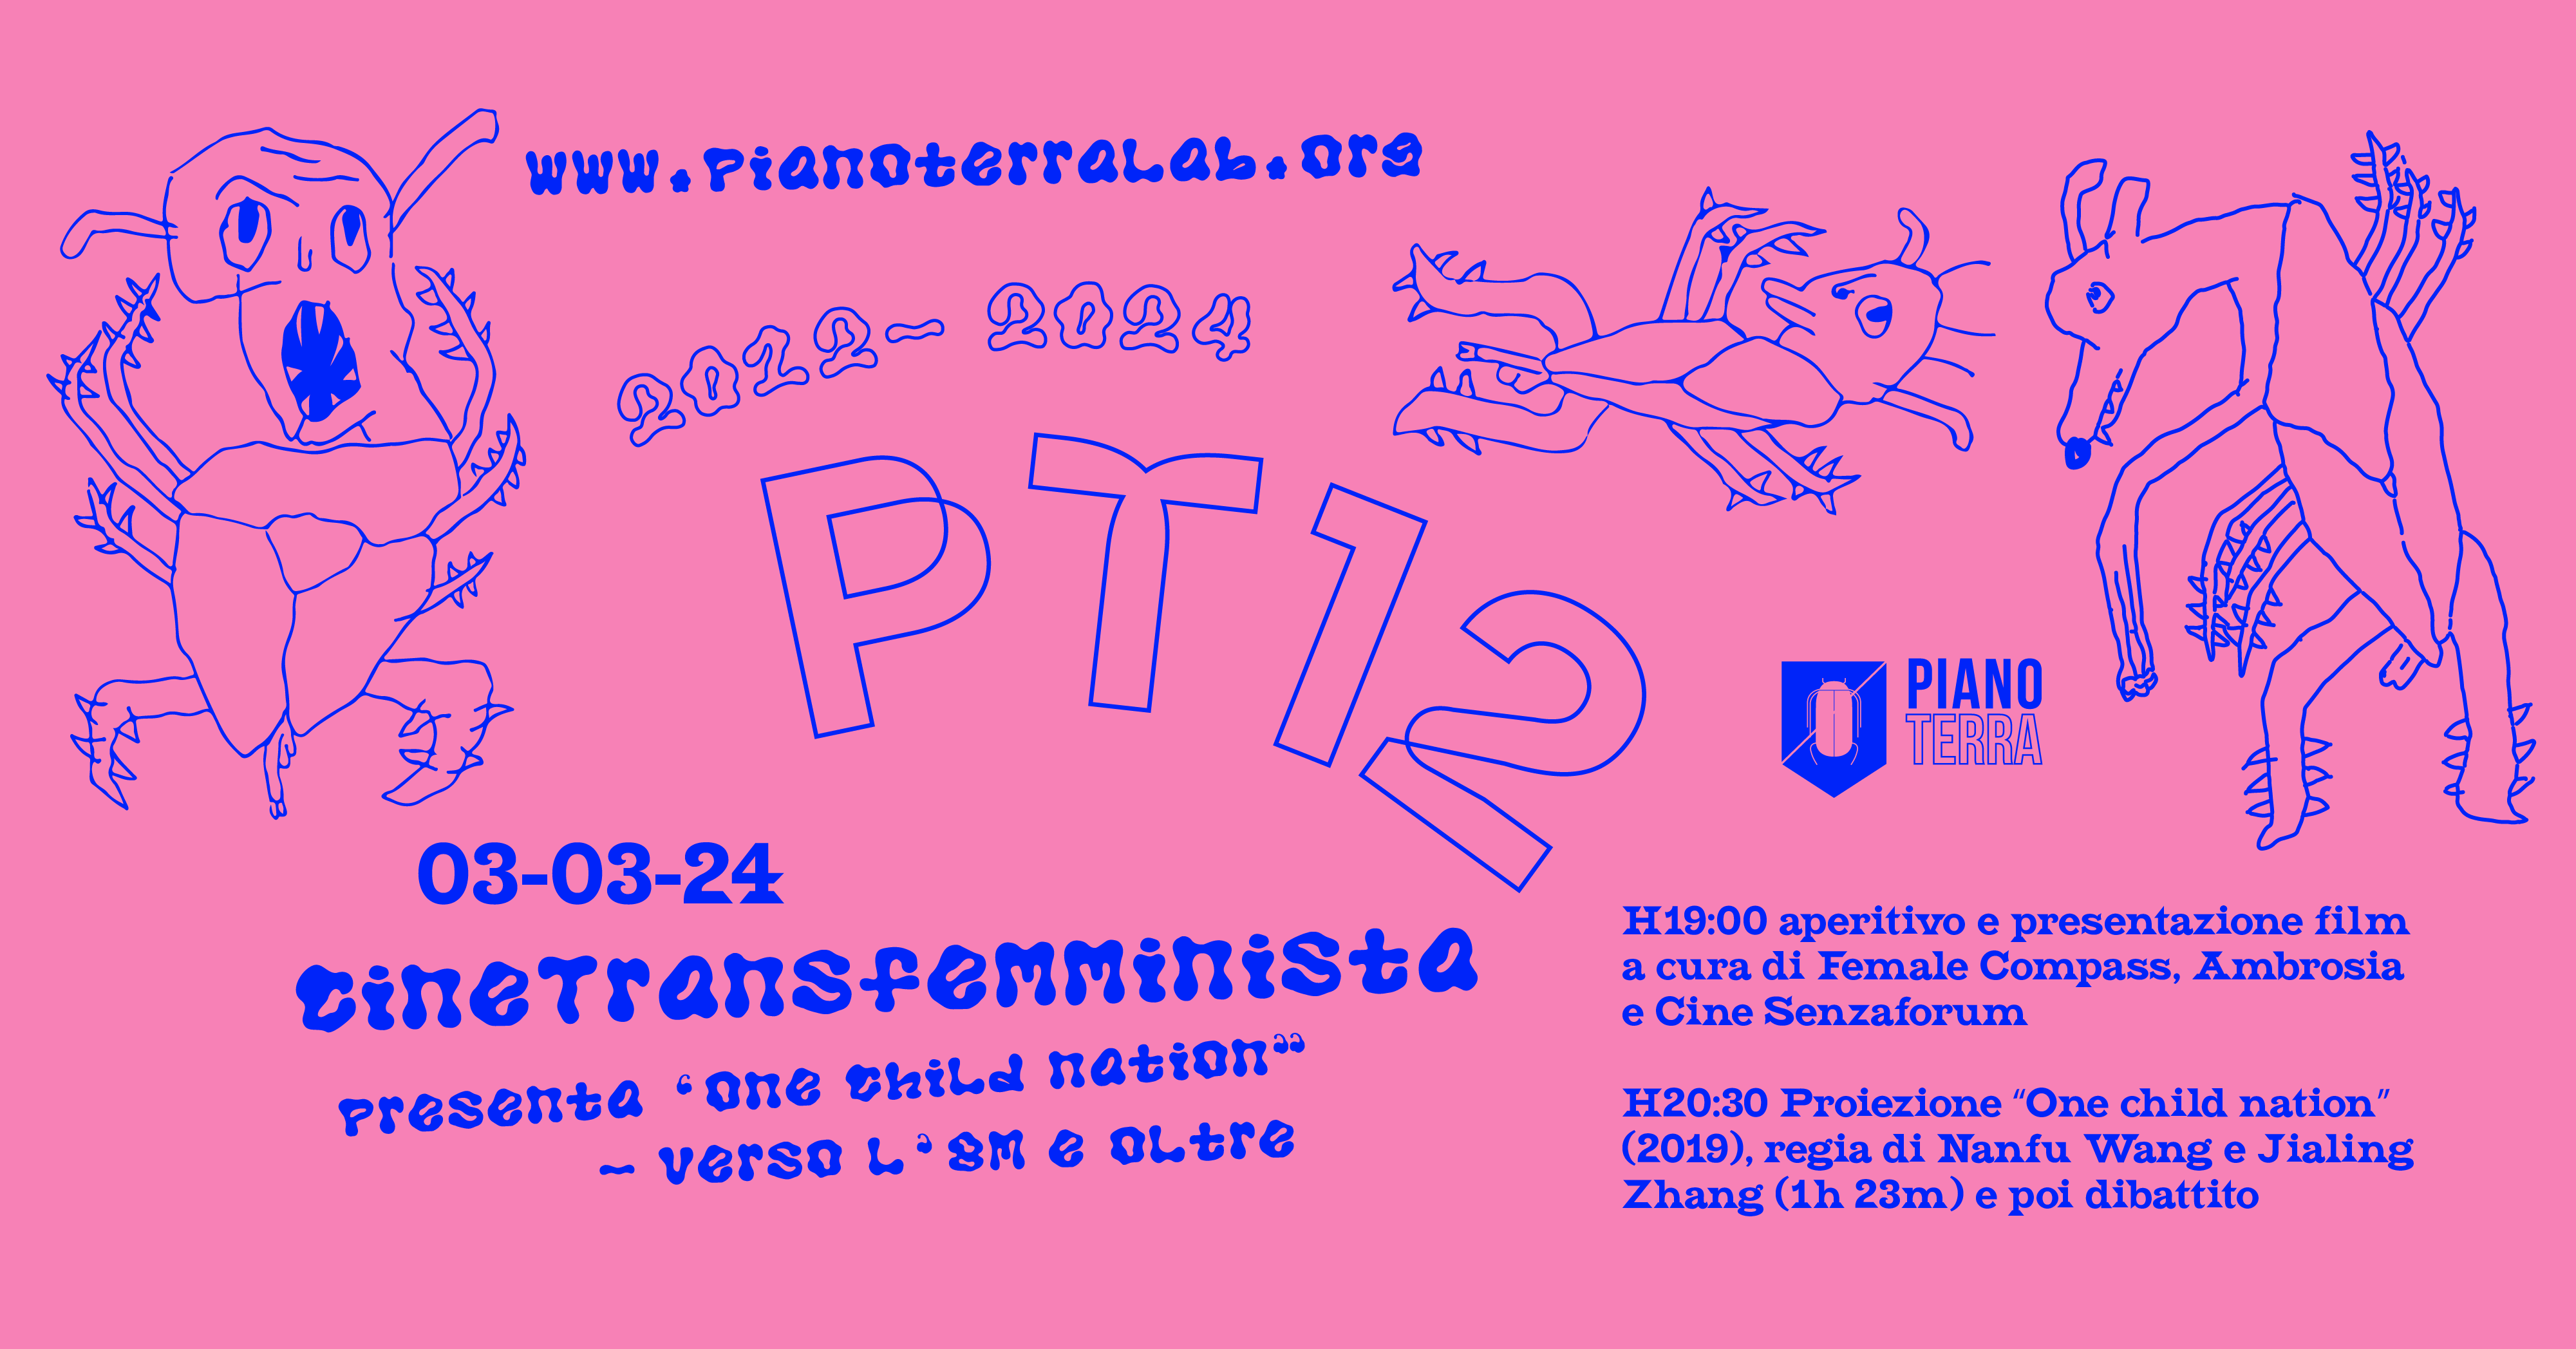 grafica sfondo rosa e disegni blu con testo in font sicodellico che presenta il prpgrama del cinetransfemminista per il compleanno di PT